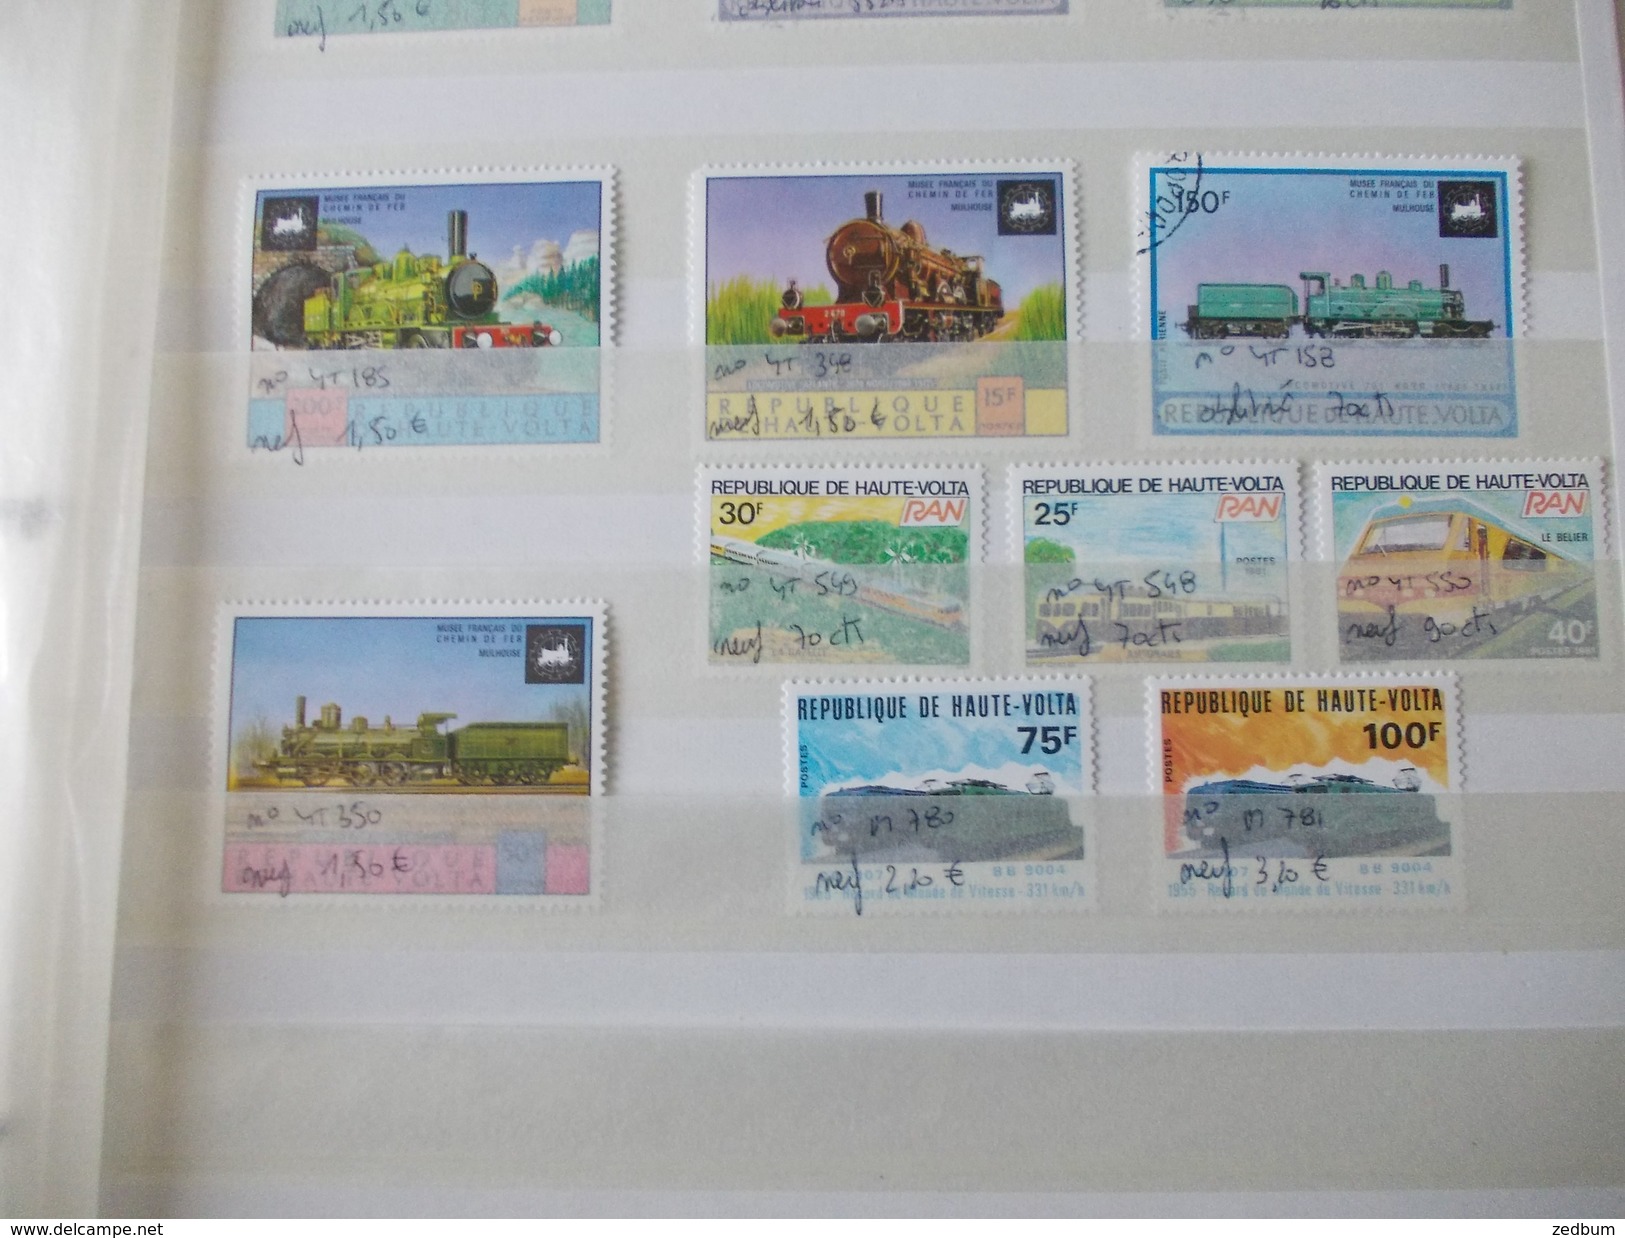 ALBUM 5 collection de timbres avec pour thème le chemin de fer train de tout pays valeur 447.50 &euro;